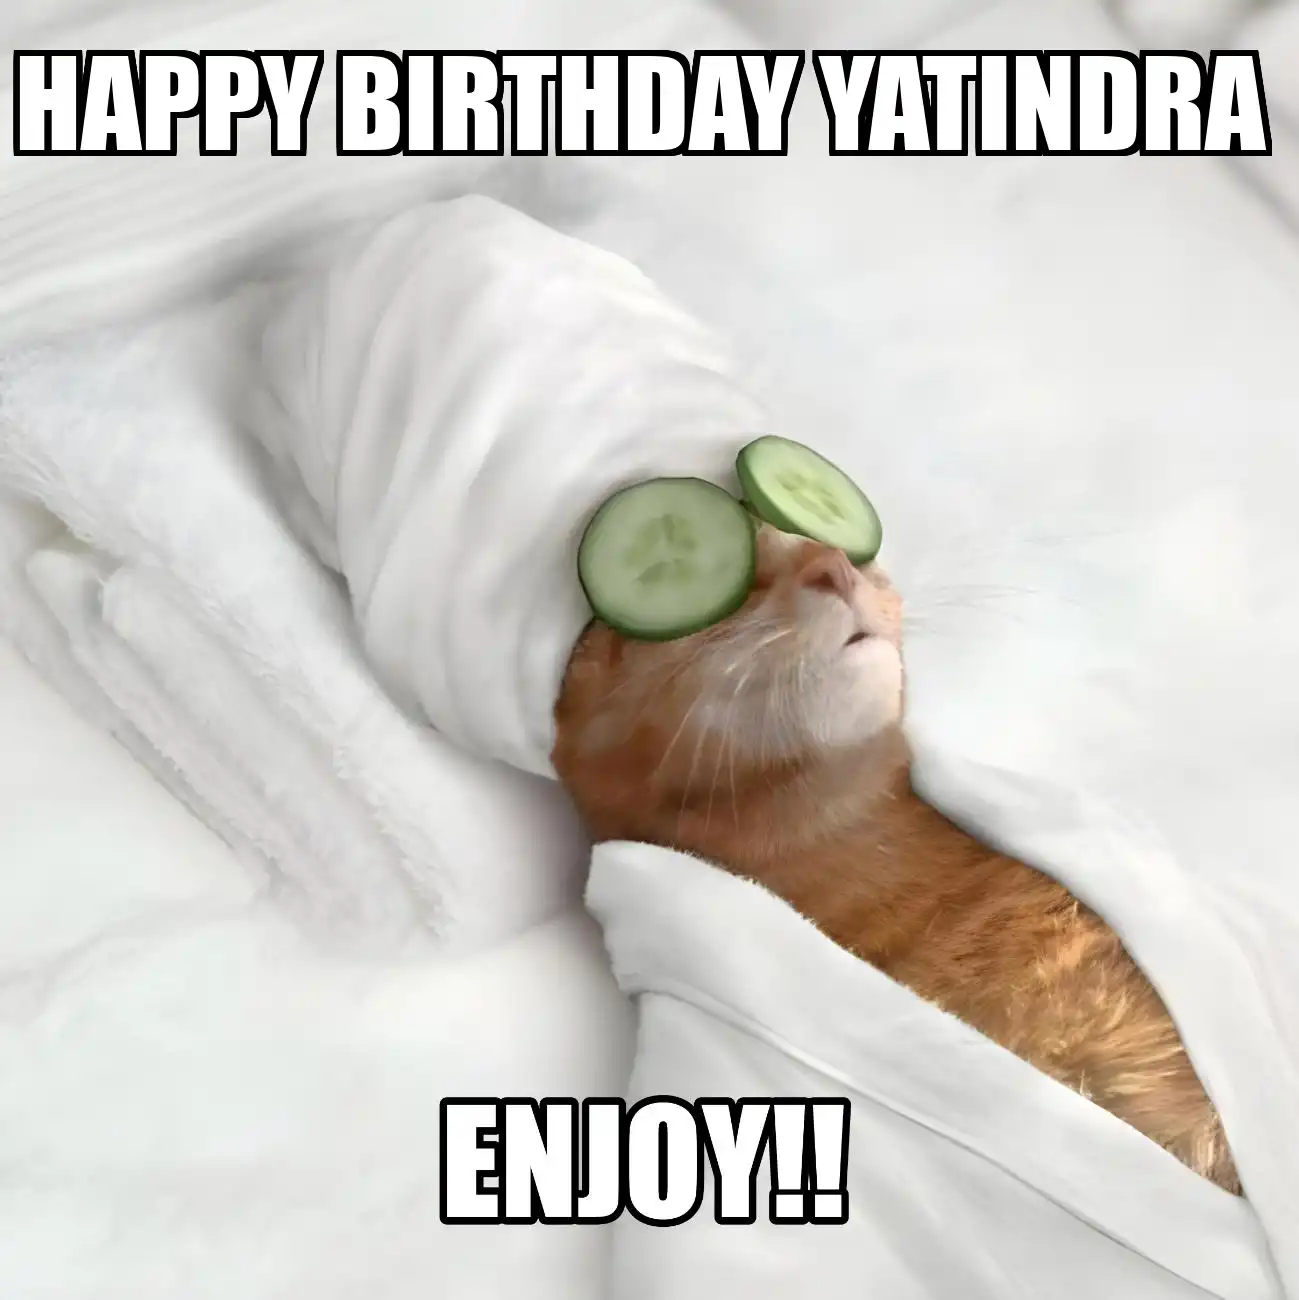 Happy Birthday Yatindra Enjoy Cat Meme